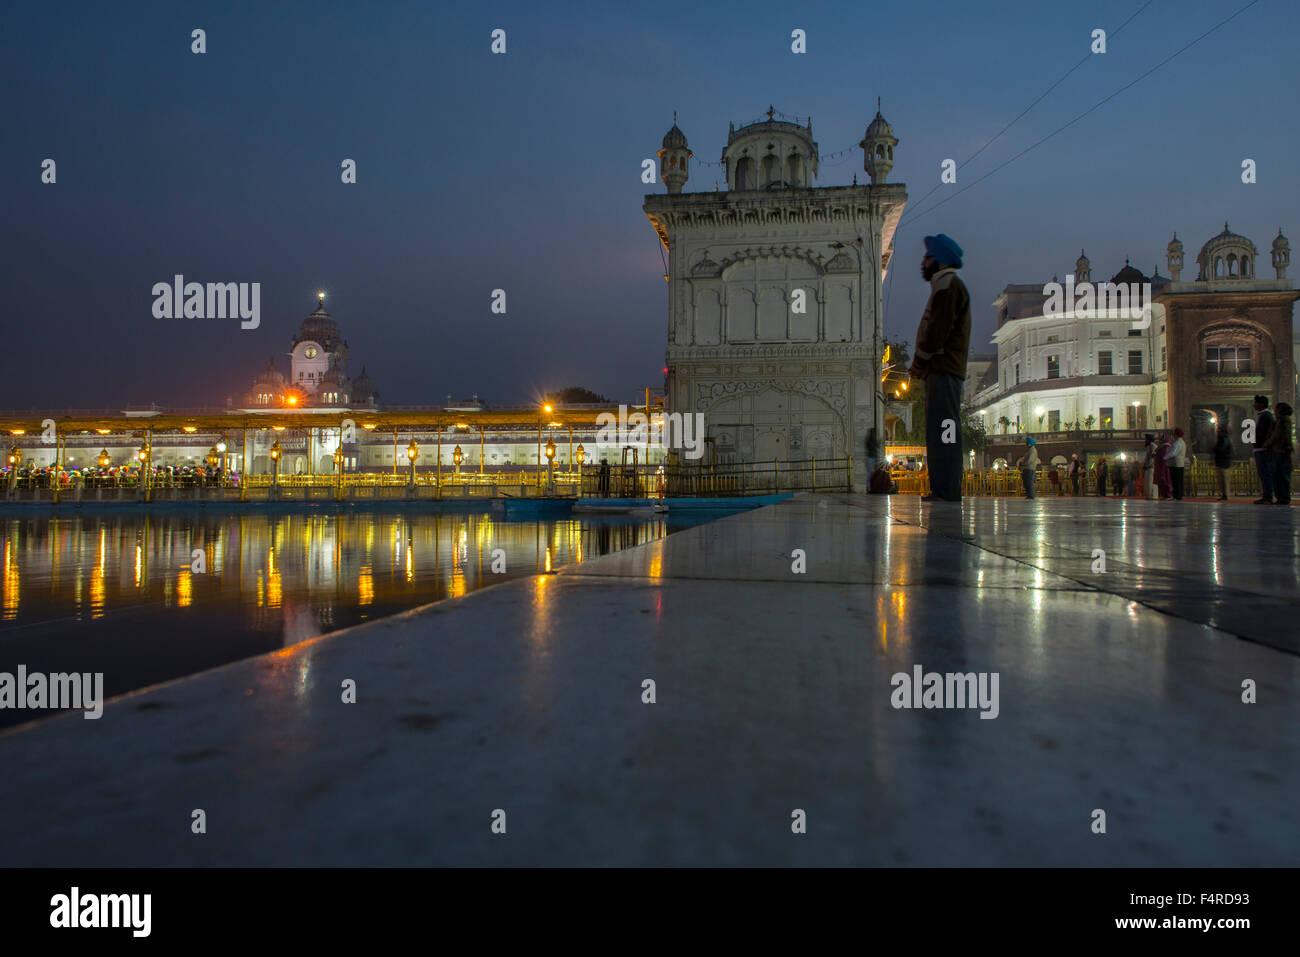 L'Asie, l'Inde, Punjab, Amritsar, temple d'Or, la religion, sikh, culte, saint, Pilgrim, travel, icône, monument, de la réflexion, de l'extérieure Banque D'Images